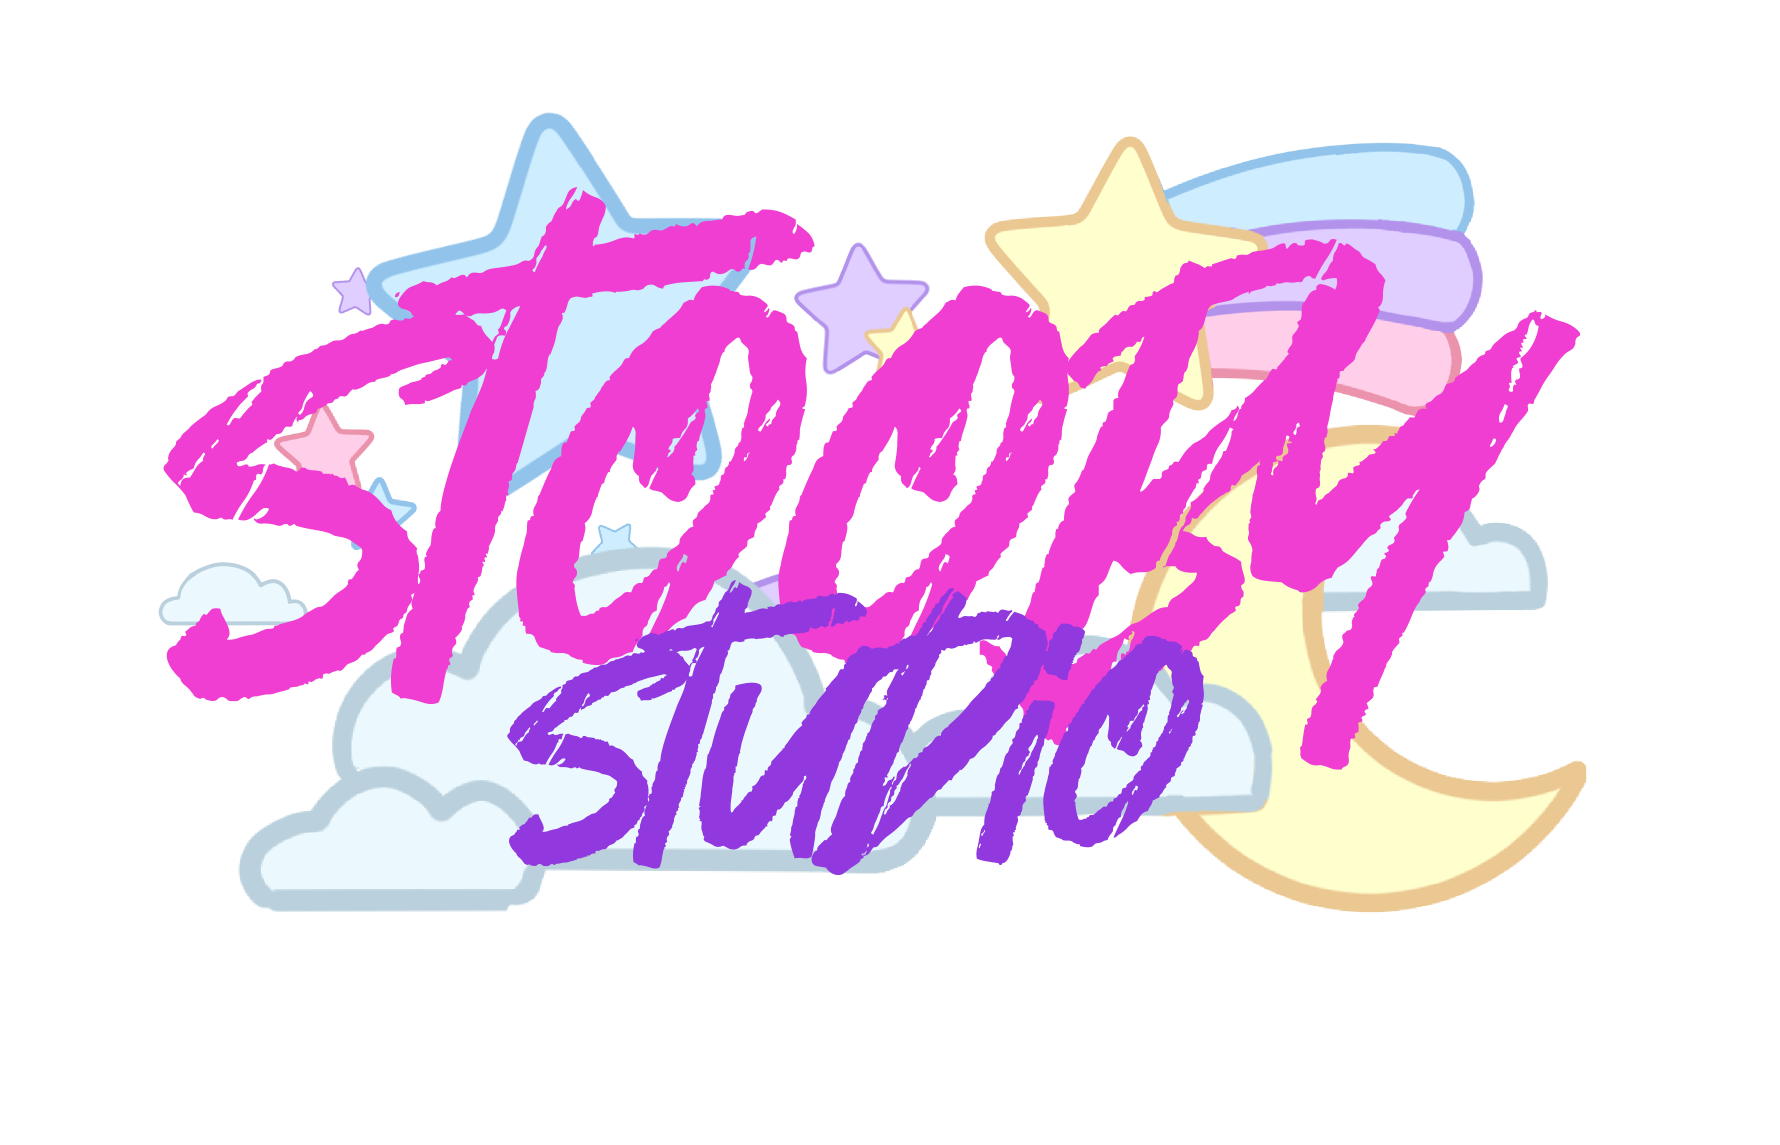 Stooby Studio